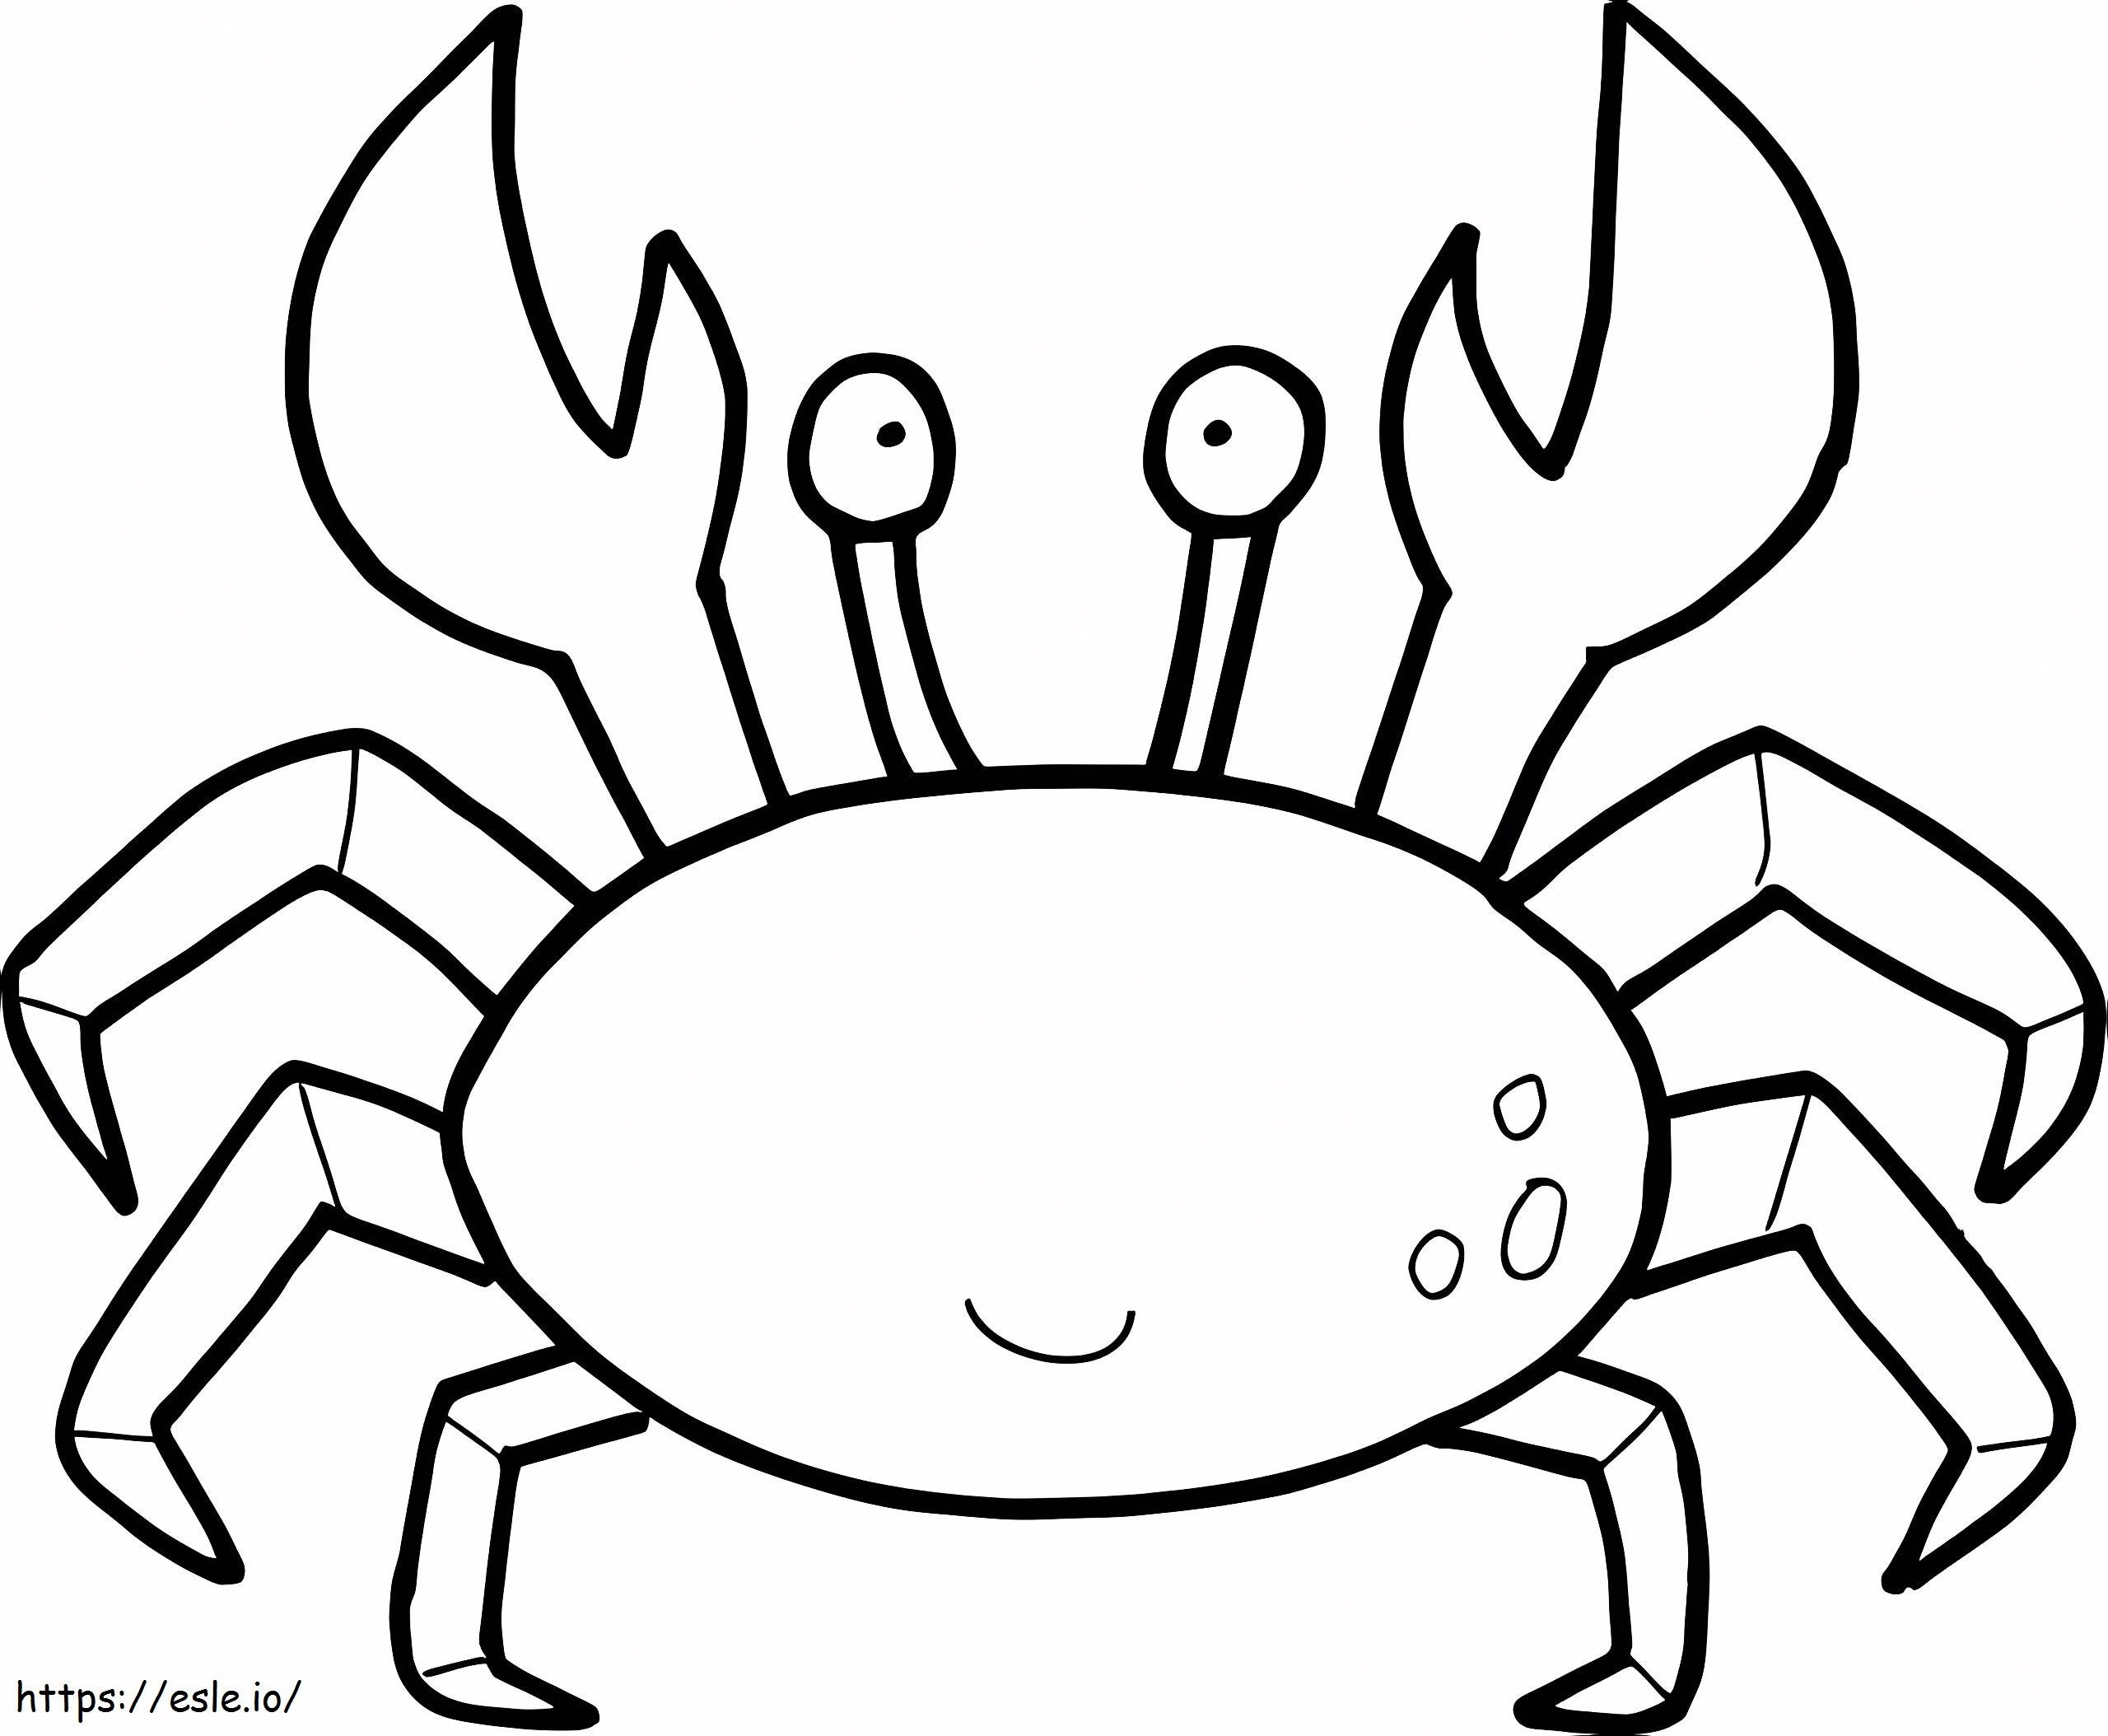 Happy Crab coloring page